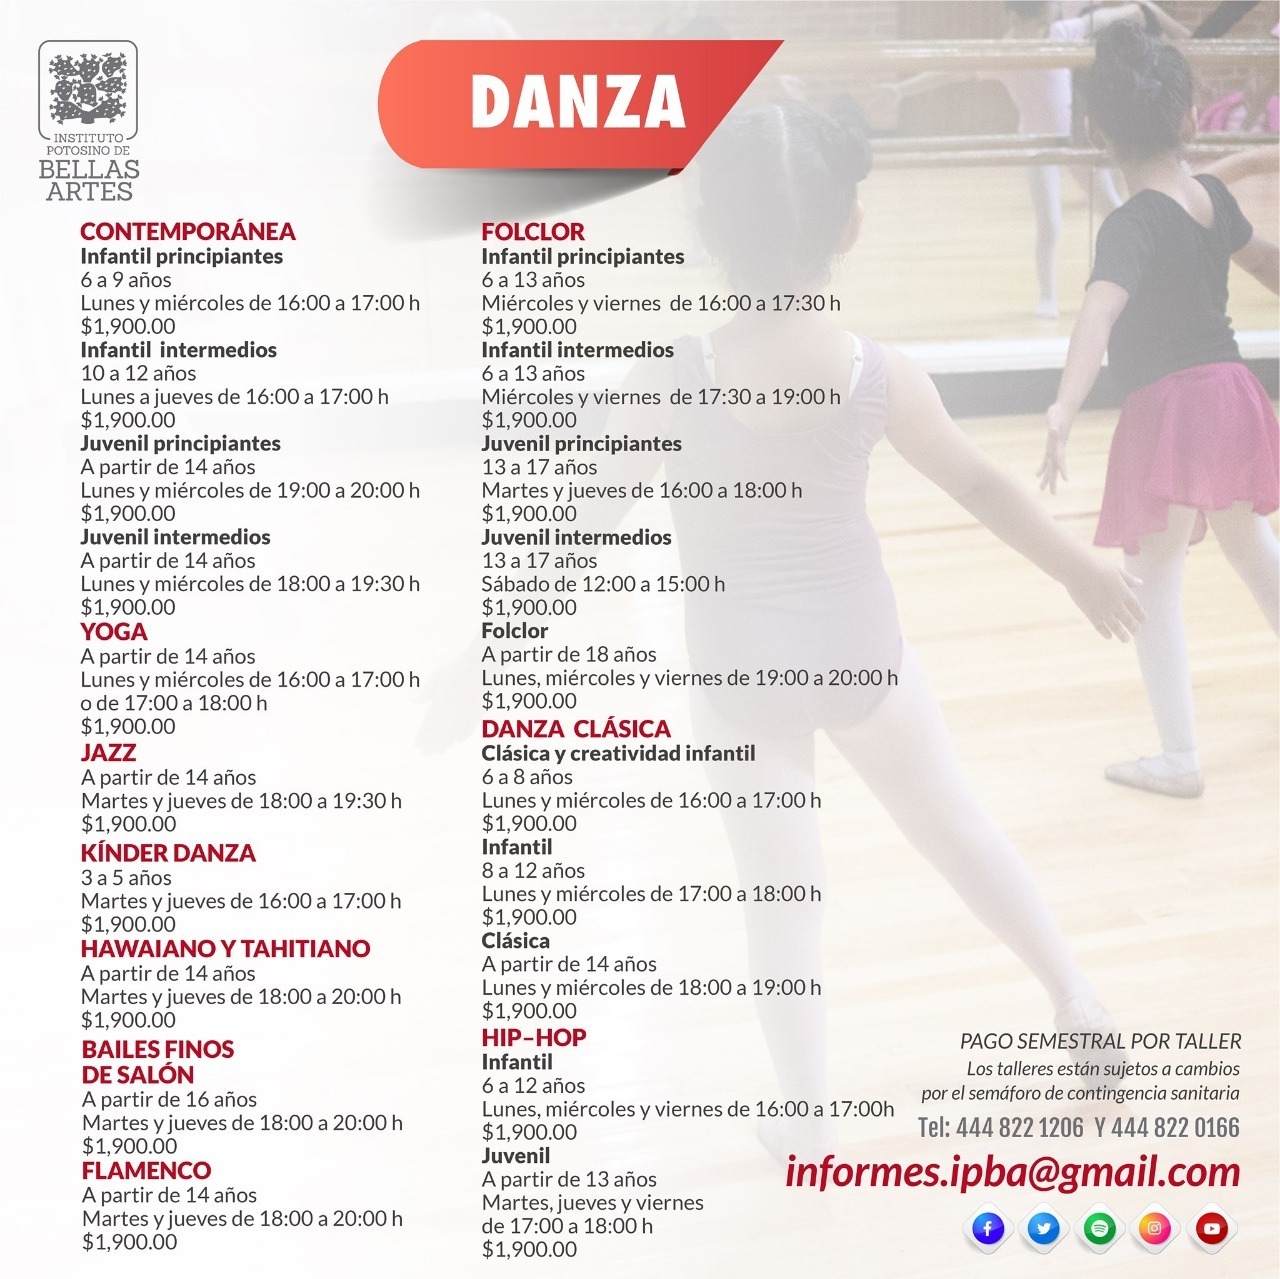 Inscripciones abiertas para los cursos semestrales de Danza en el IPBA